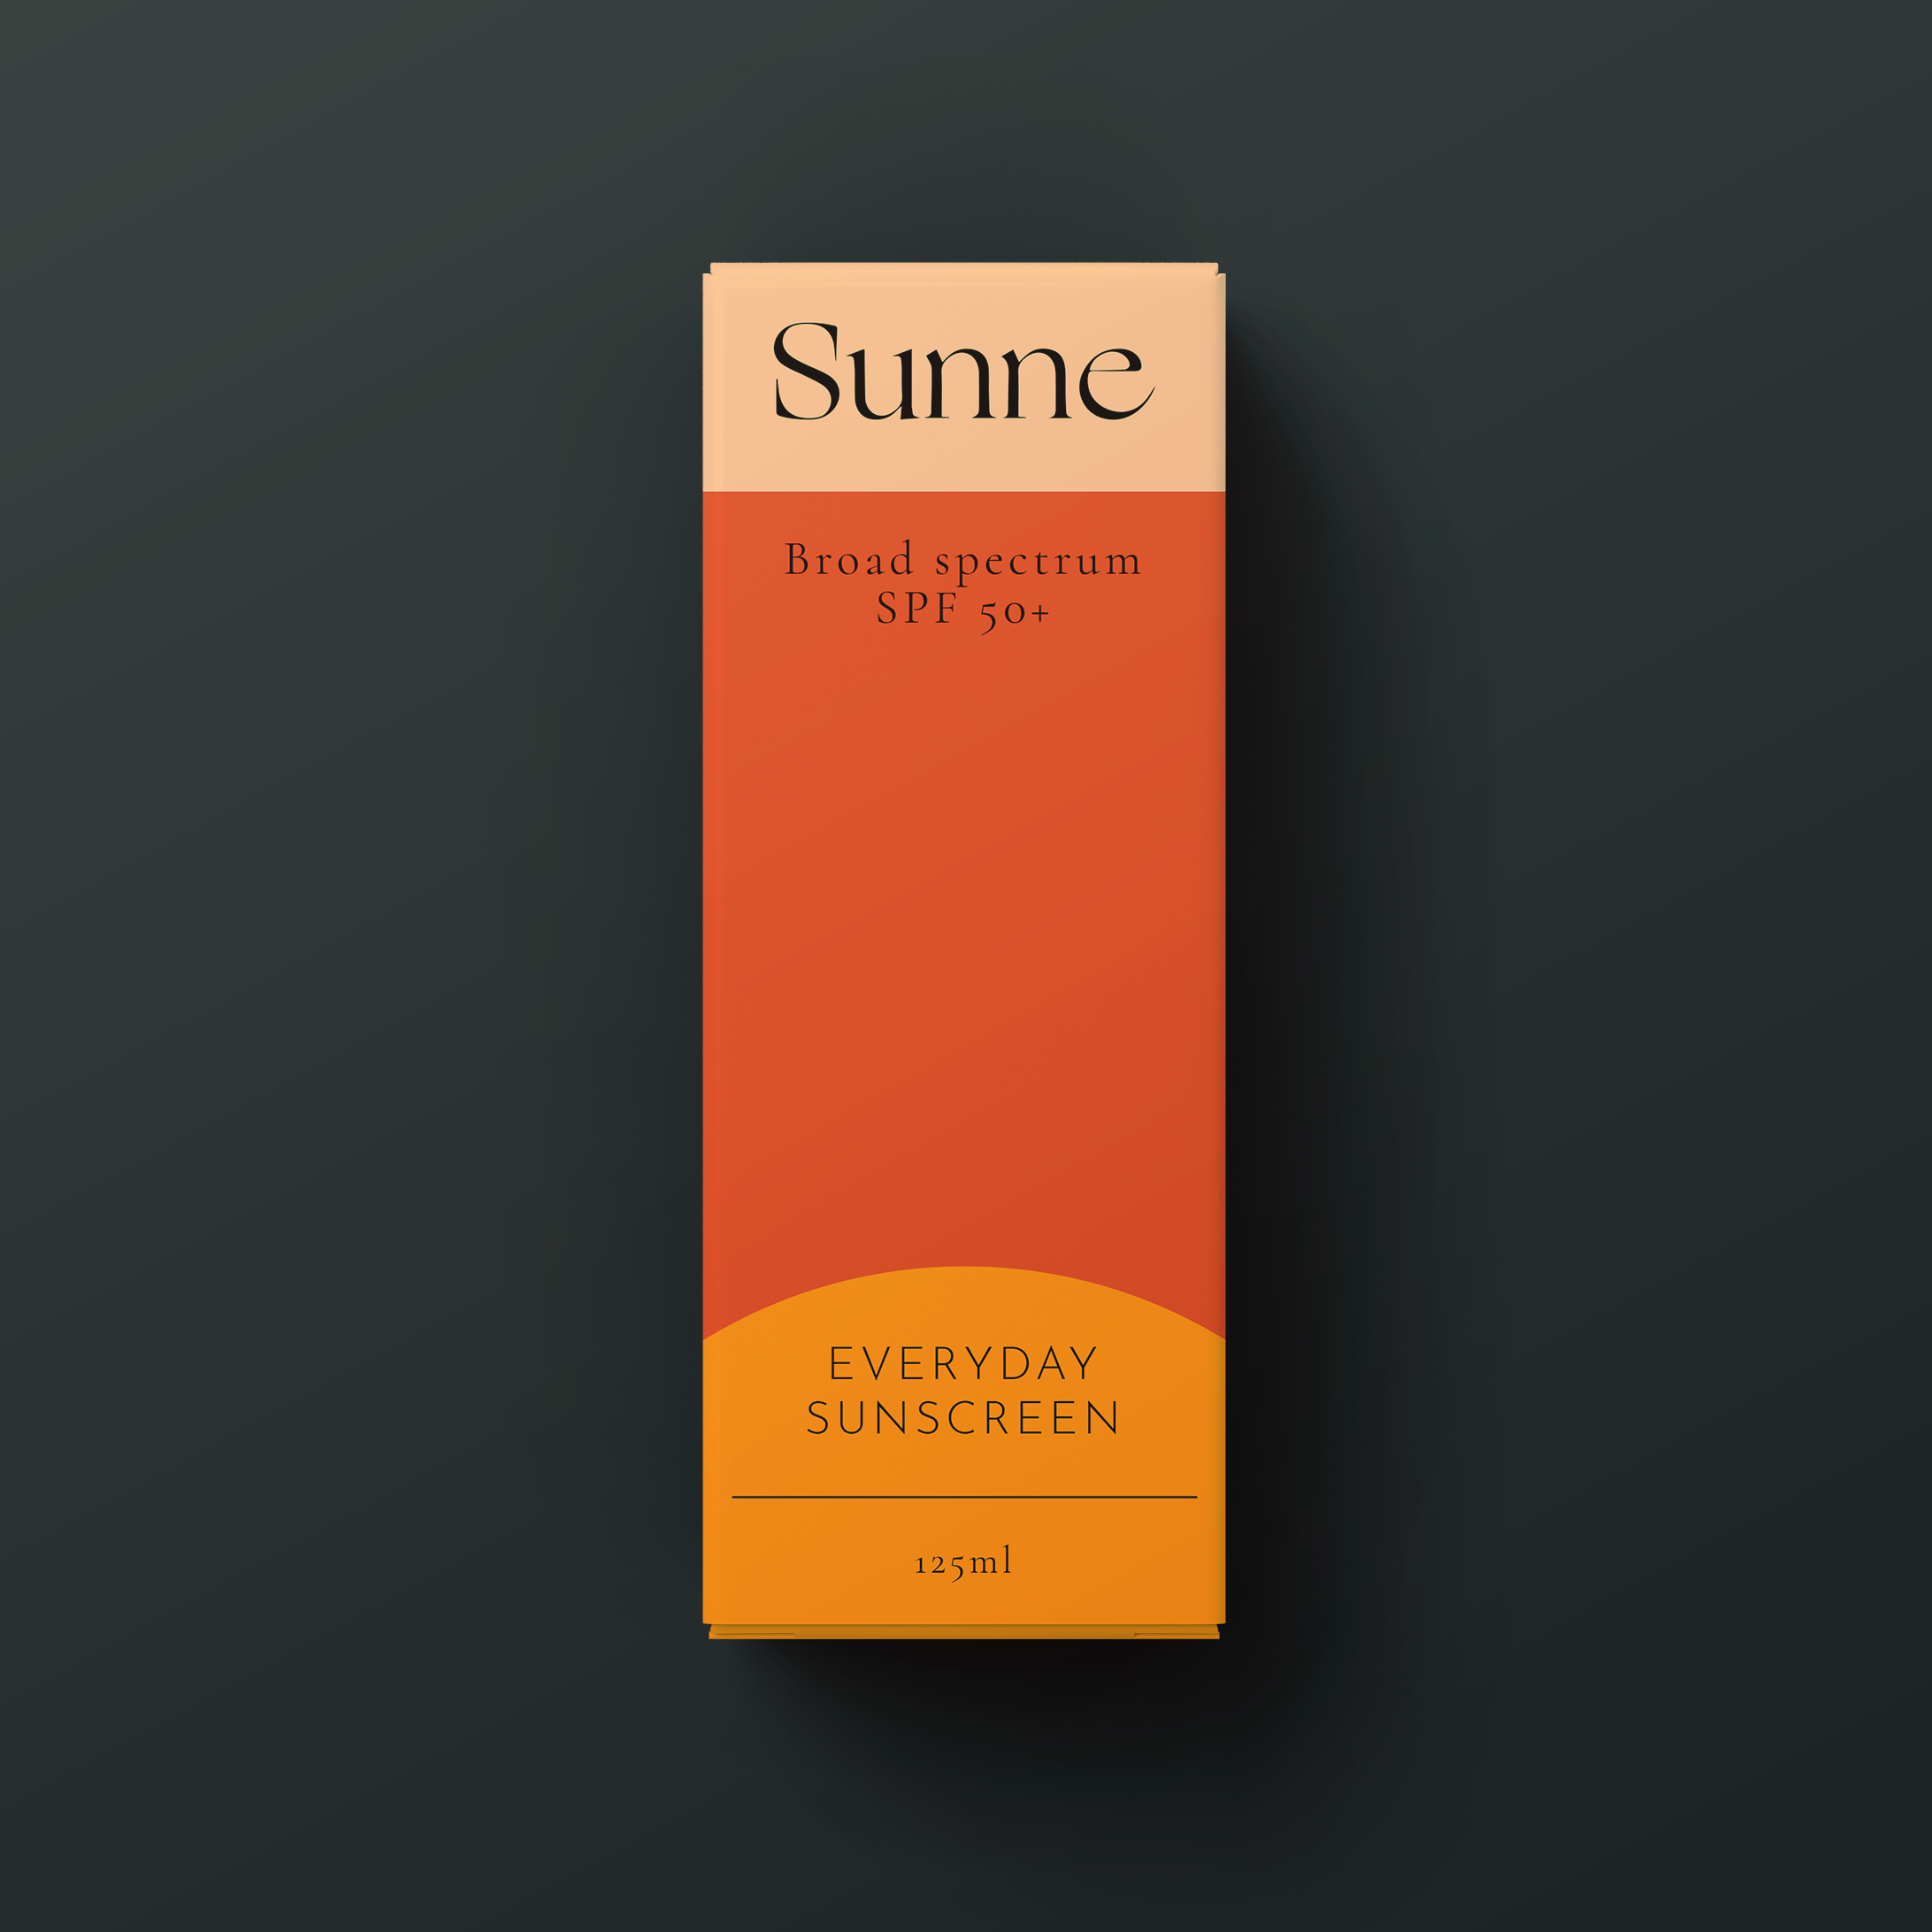 Website Design & Branding for Sunne